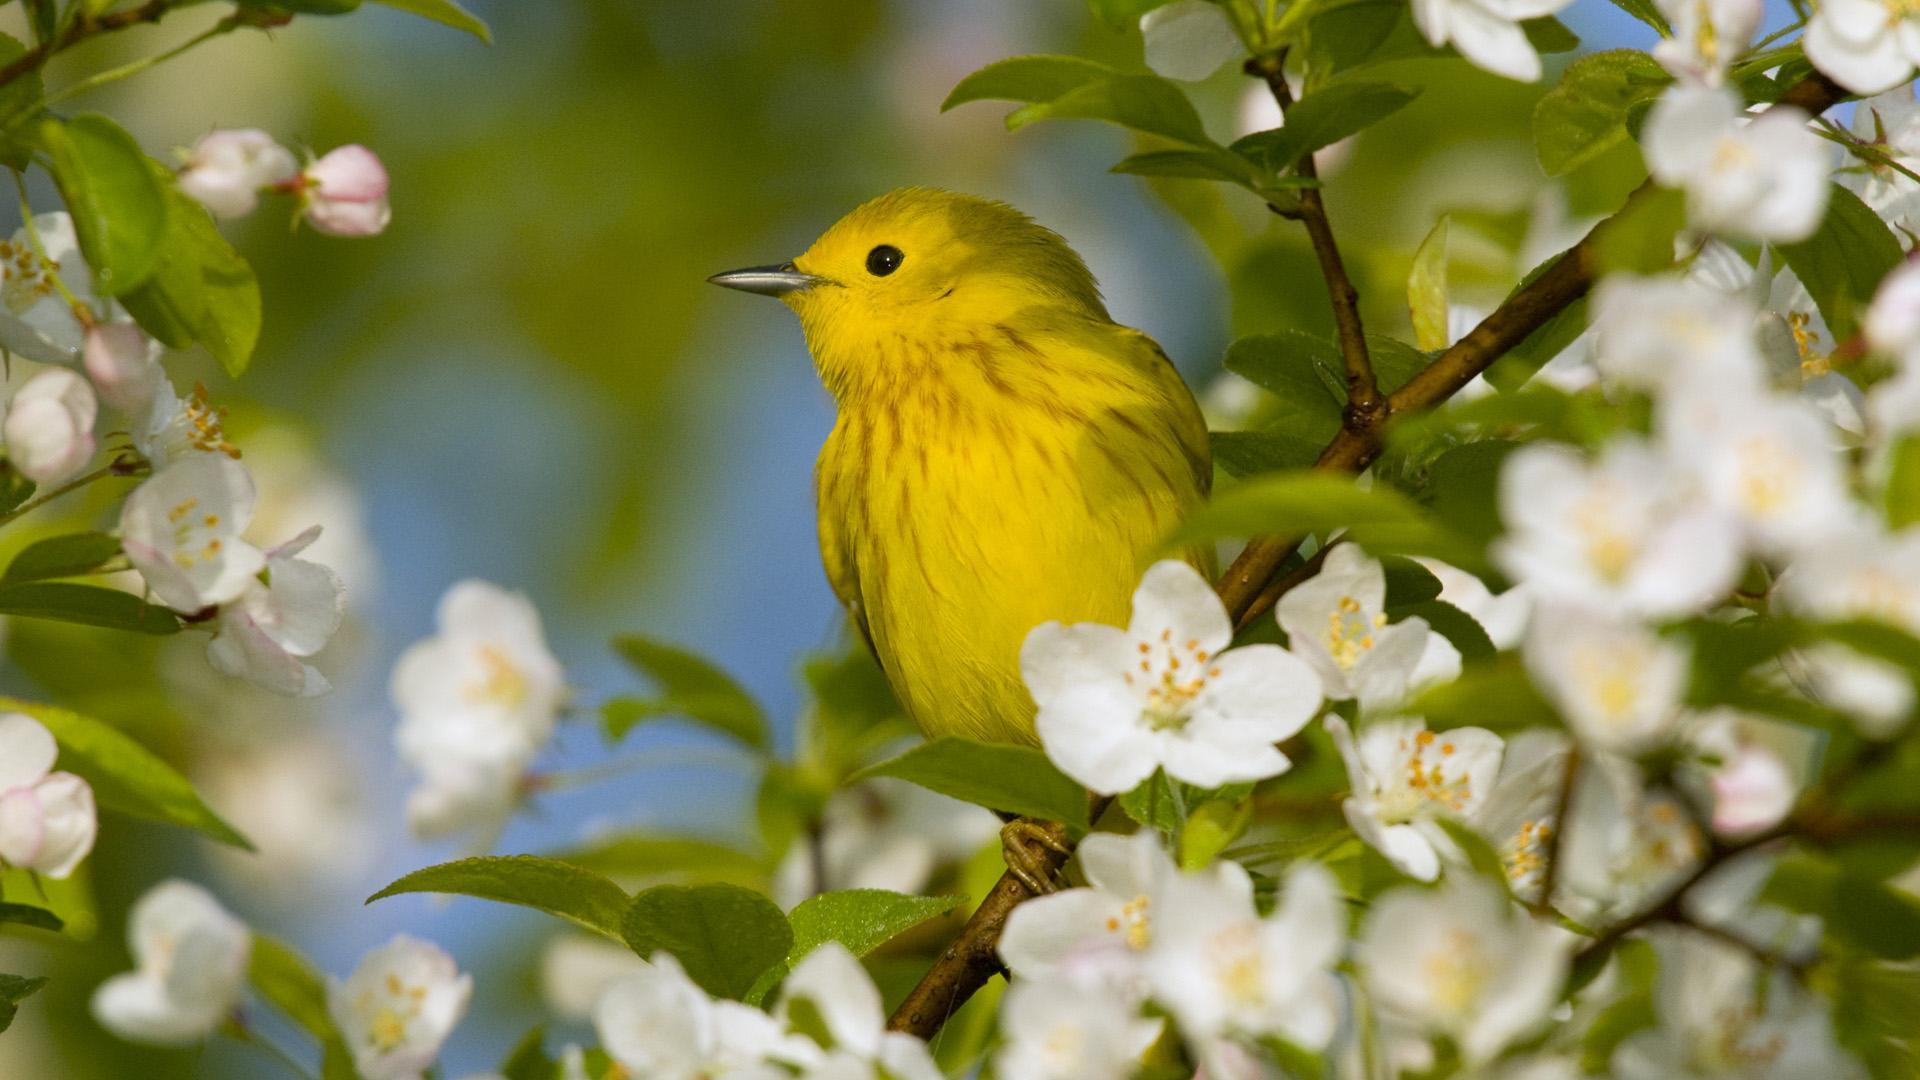 Birds and Flowers Desktop Wallpapers - Top Free Birds and Flowers Desktop Backgrounds